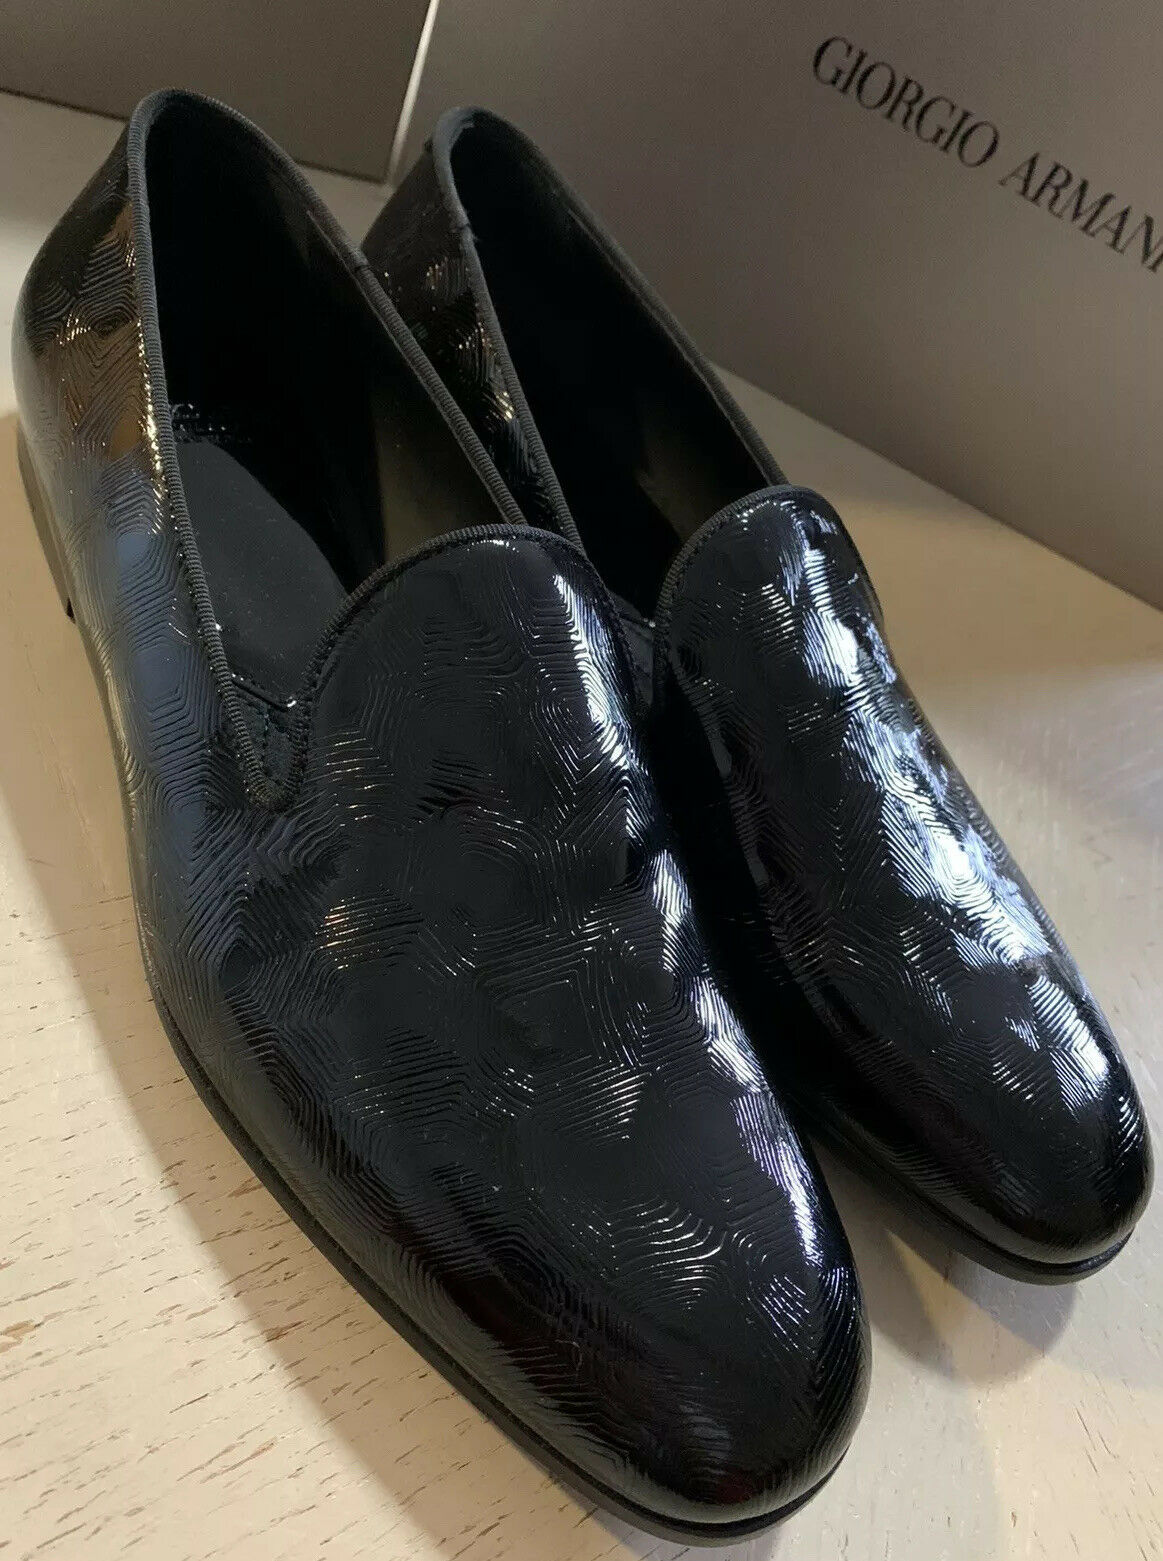 giorgio armani dress shoes